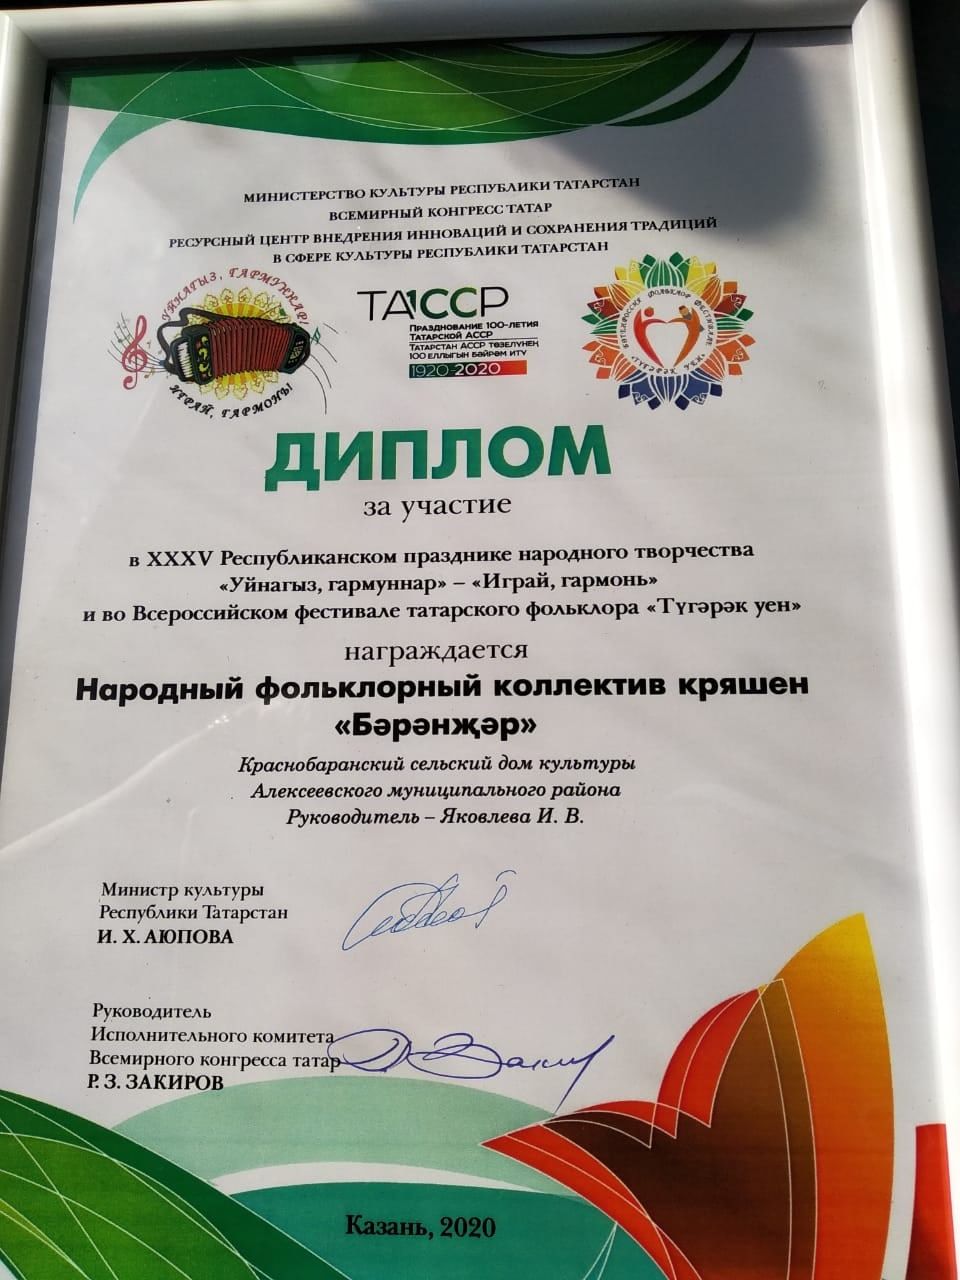 Ансамбль кряшен удостоен диплома за участие на Республиканском празднике народного творчества